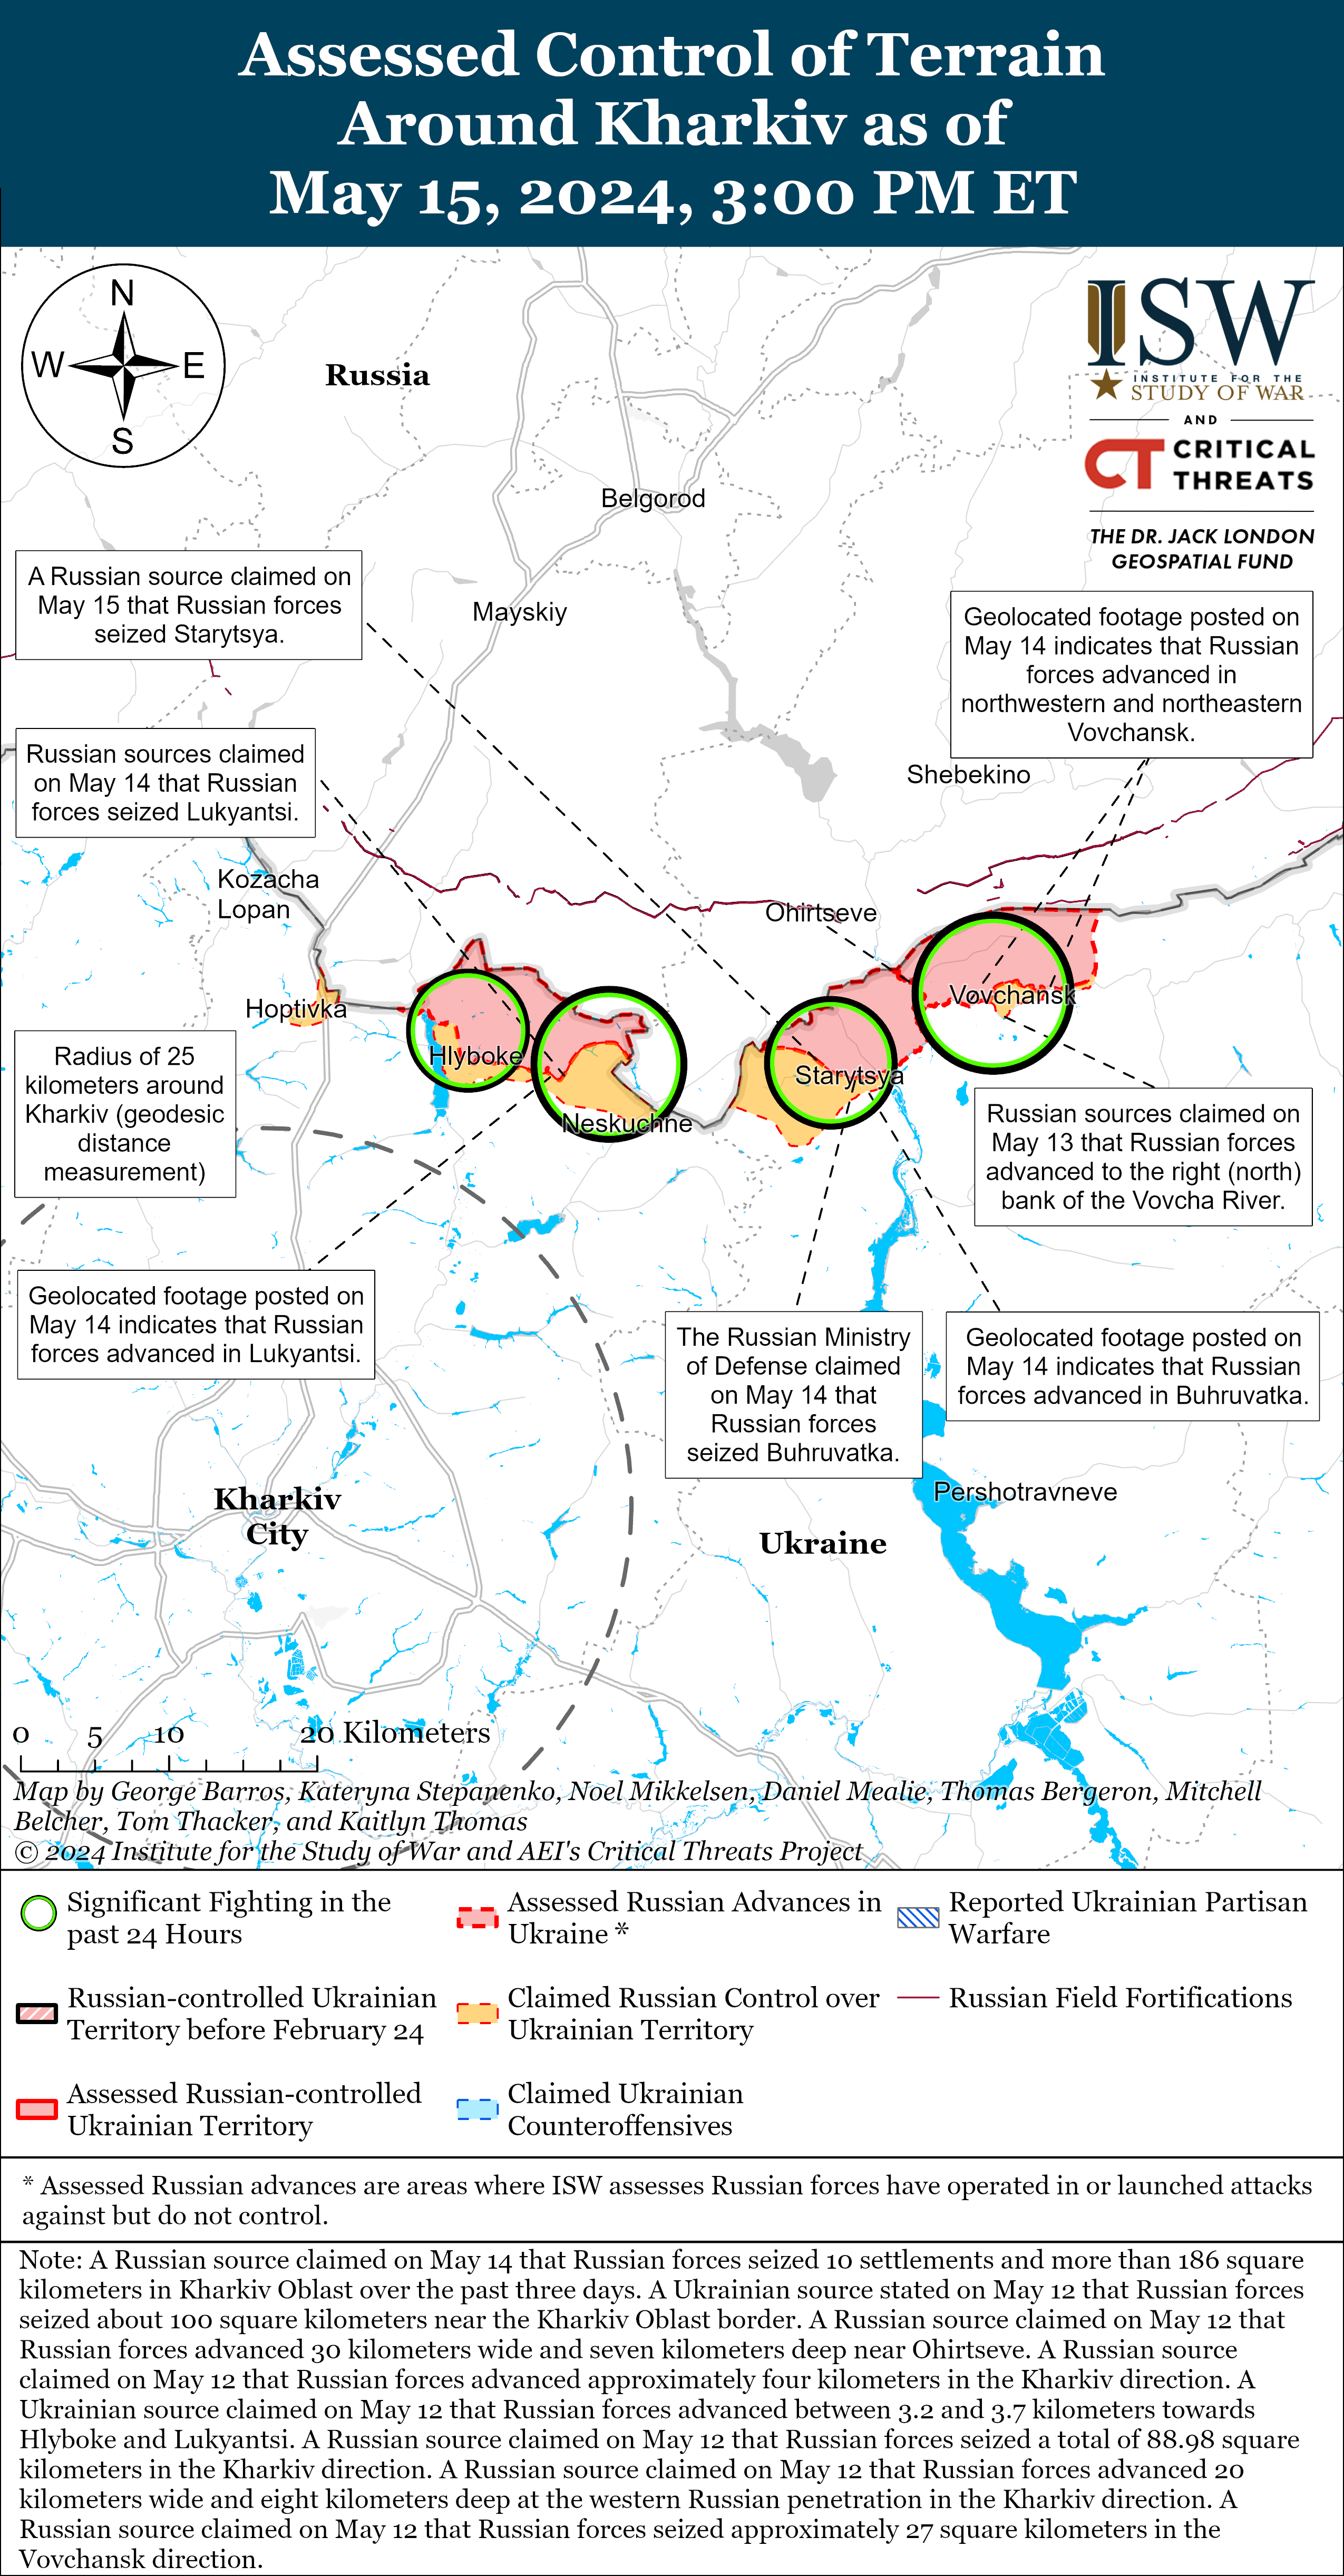 РФ без успеха наступает на Купянск, но есть продвижение оккупантов возле Волчанска: карты ISW